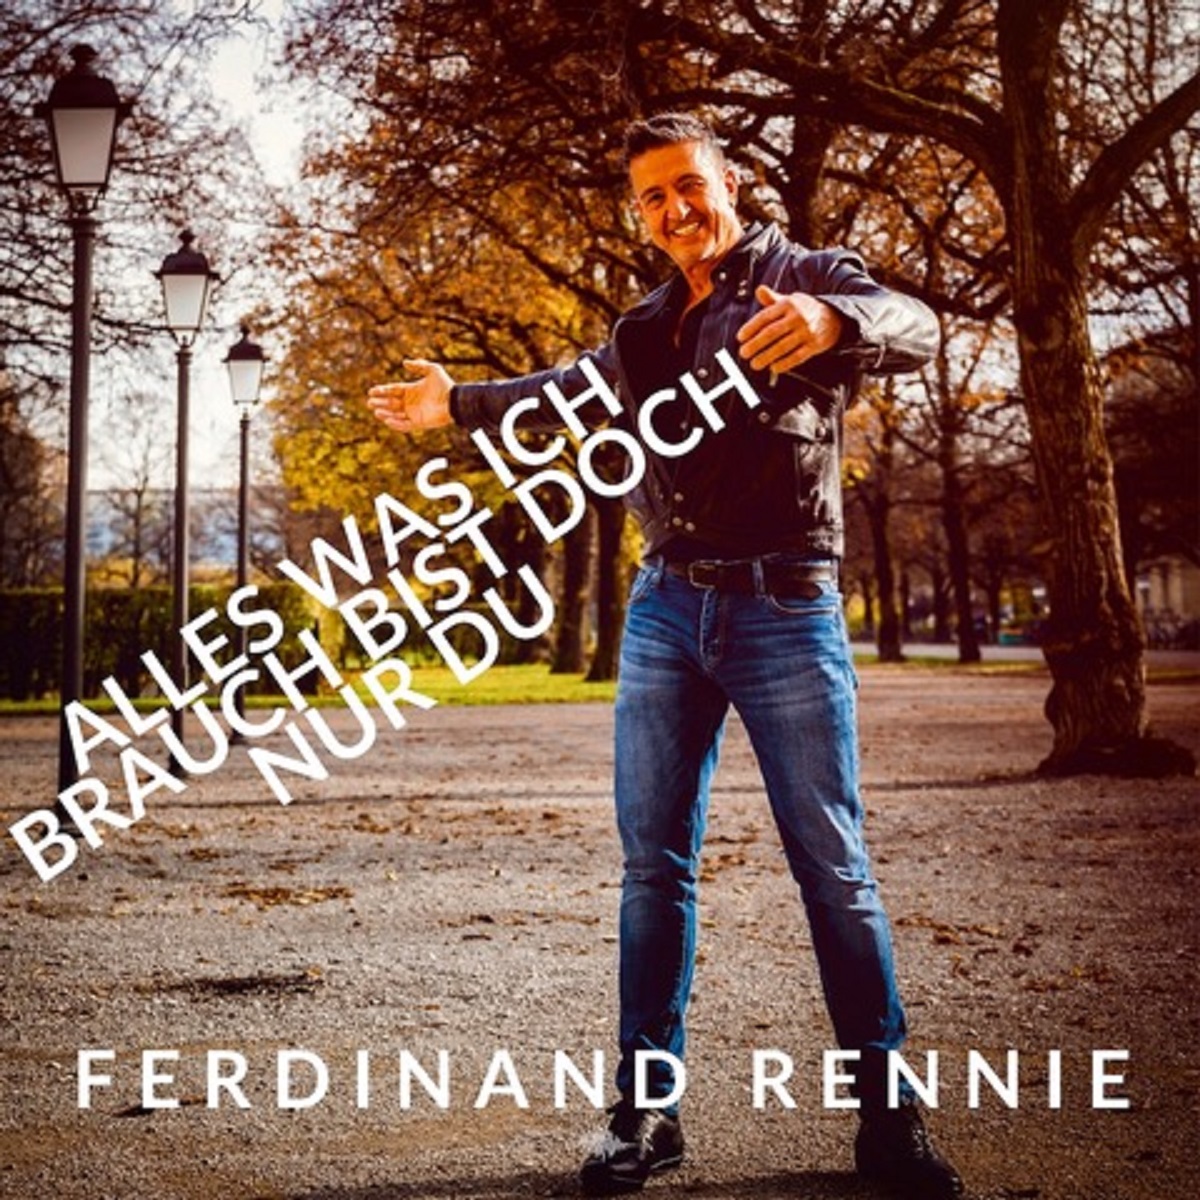 Ferdinand Rennie - alles was ich brauch - Cover1.jpg